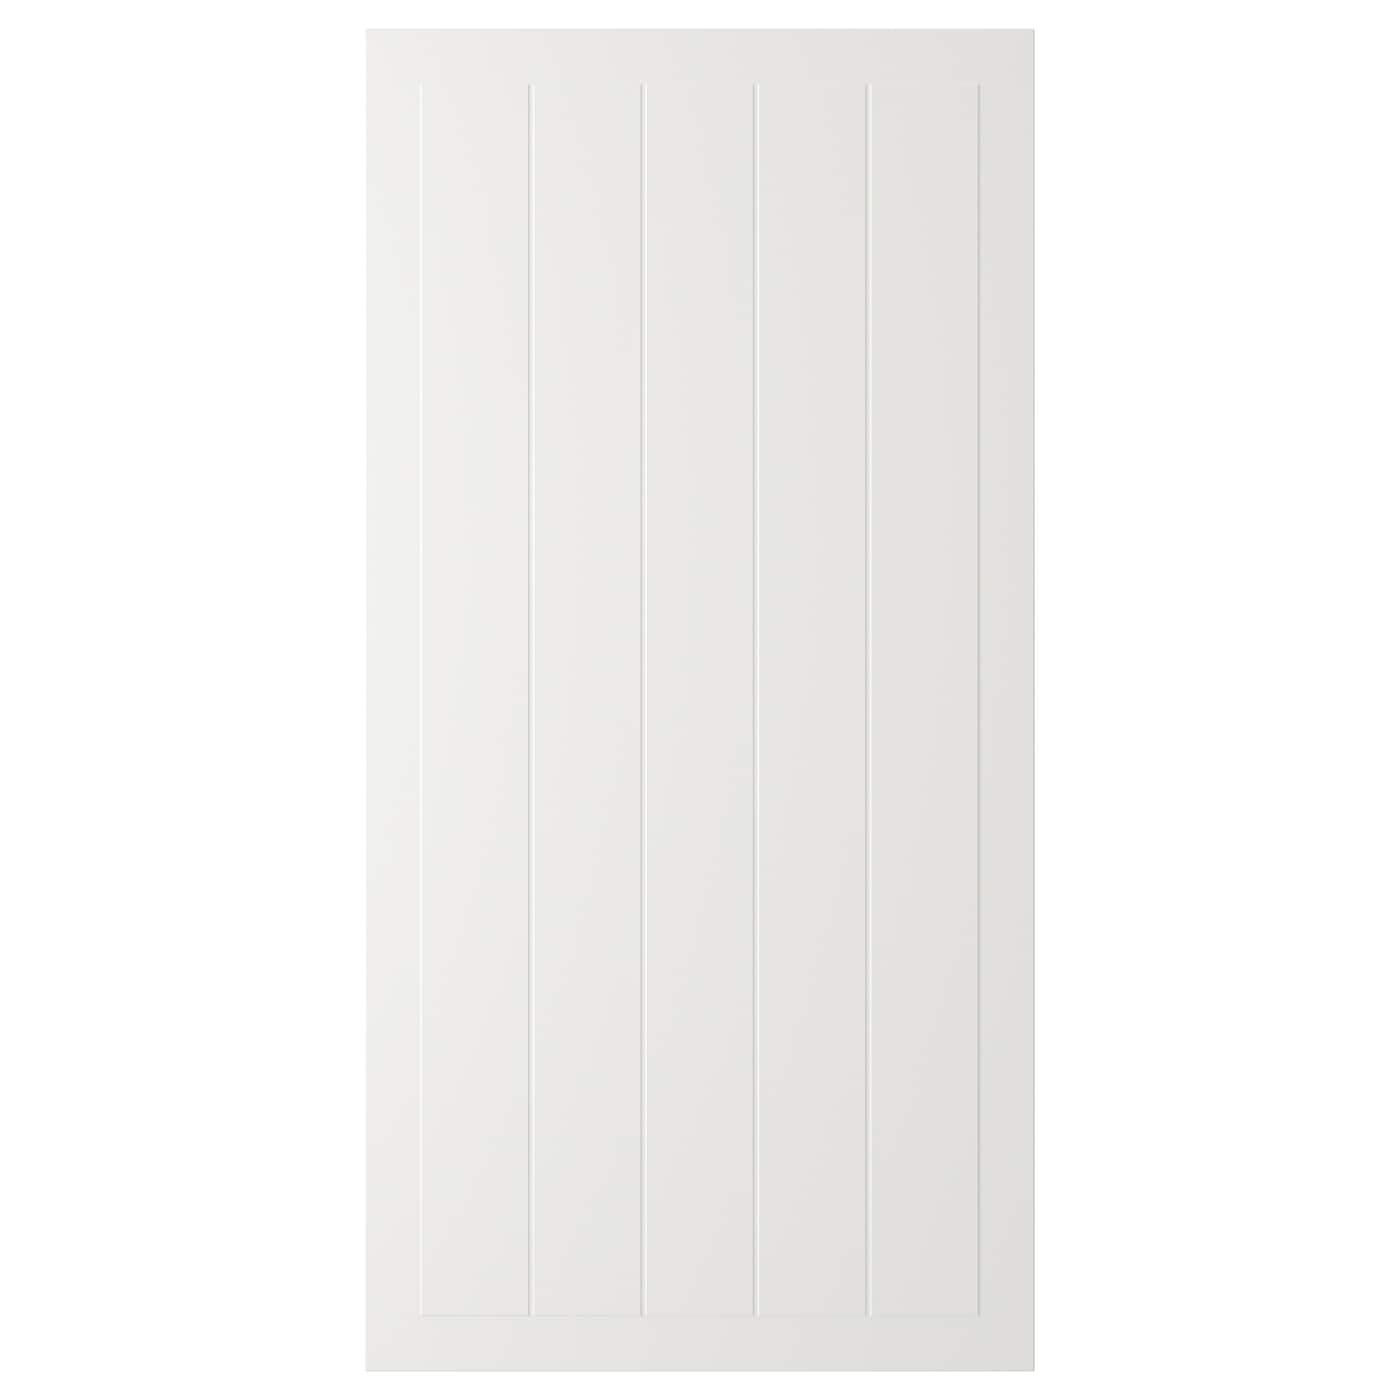 Дверца - IKEA STENSUND, 120х60 см, белый, СТЕНСУНД ИКЕА